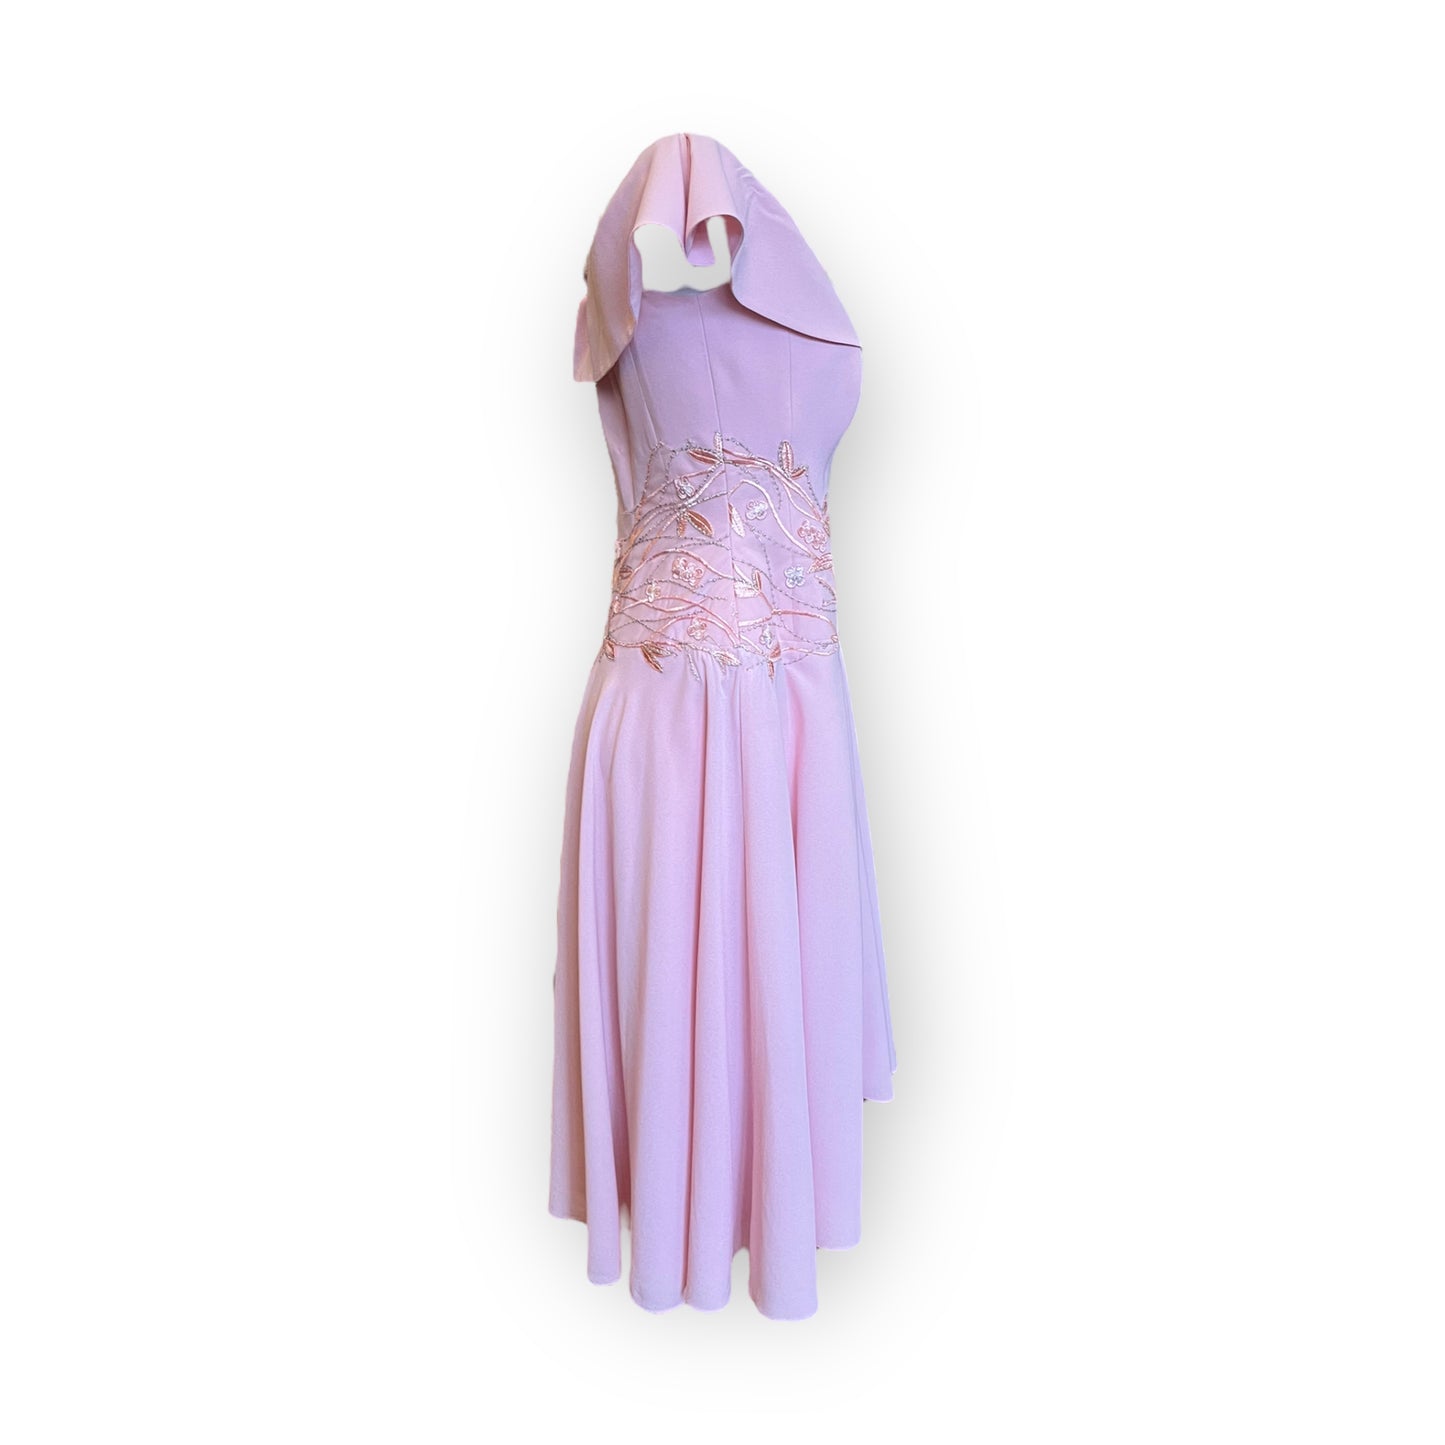 Bespoke Katherine Morrison Pink Floral Dress